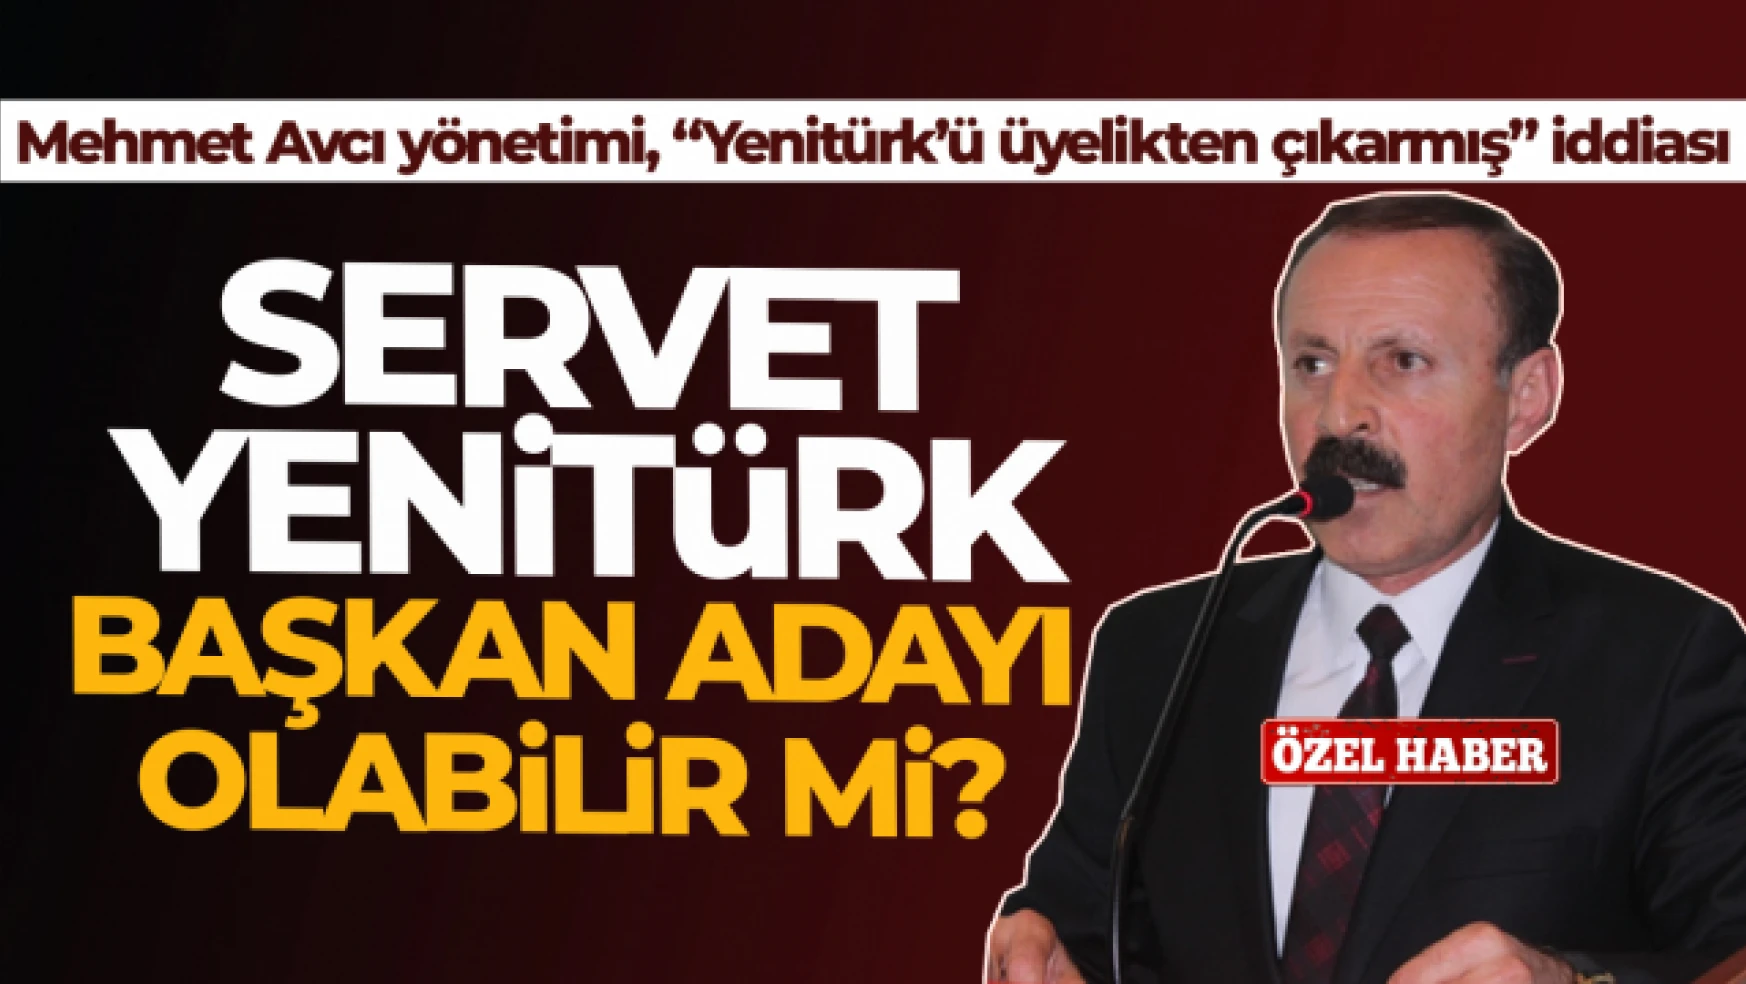 Vanspor'da Servet Yenitürk'e üyelik şoku! Yenitürk, başkan adayı olabilir mi?